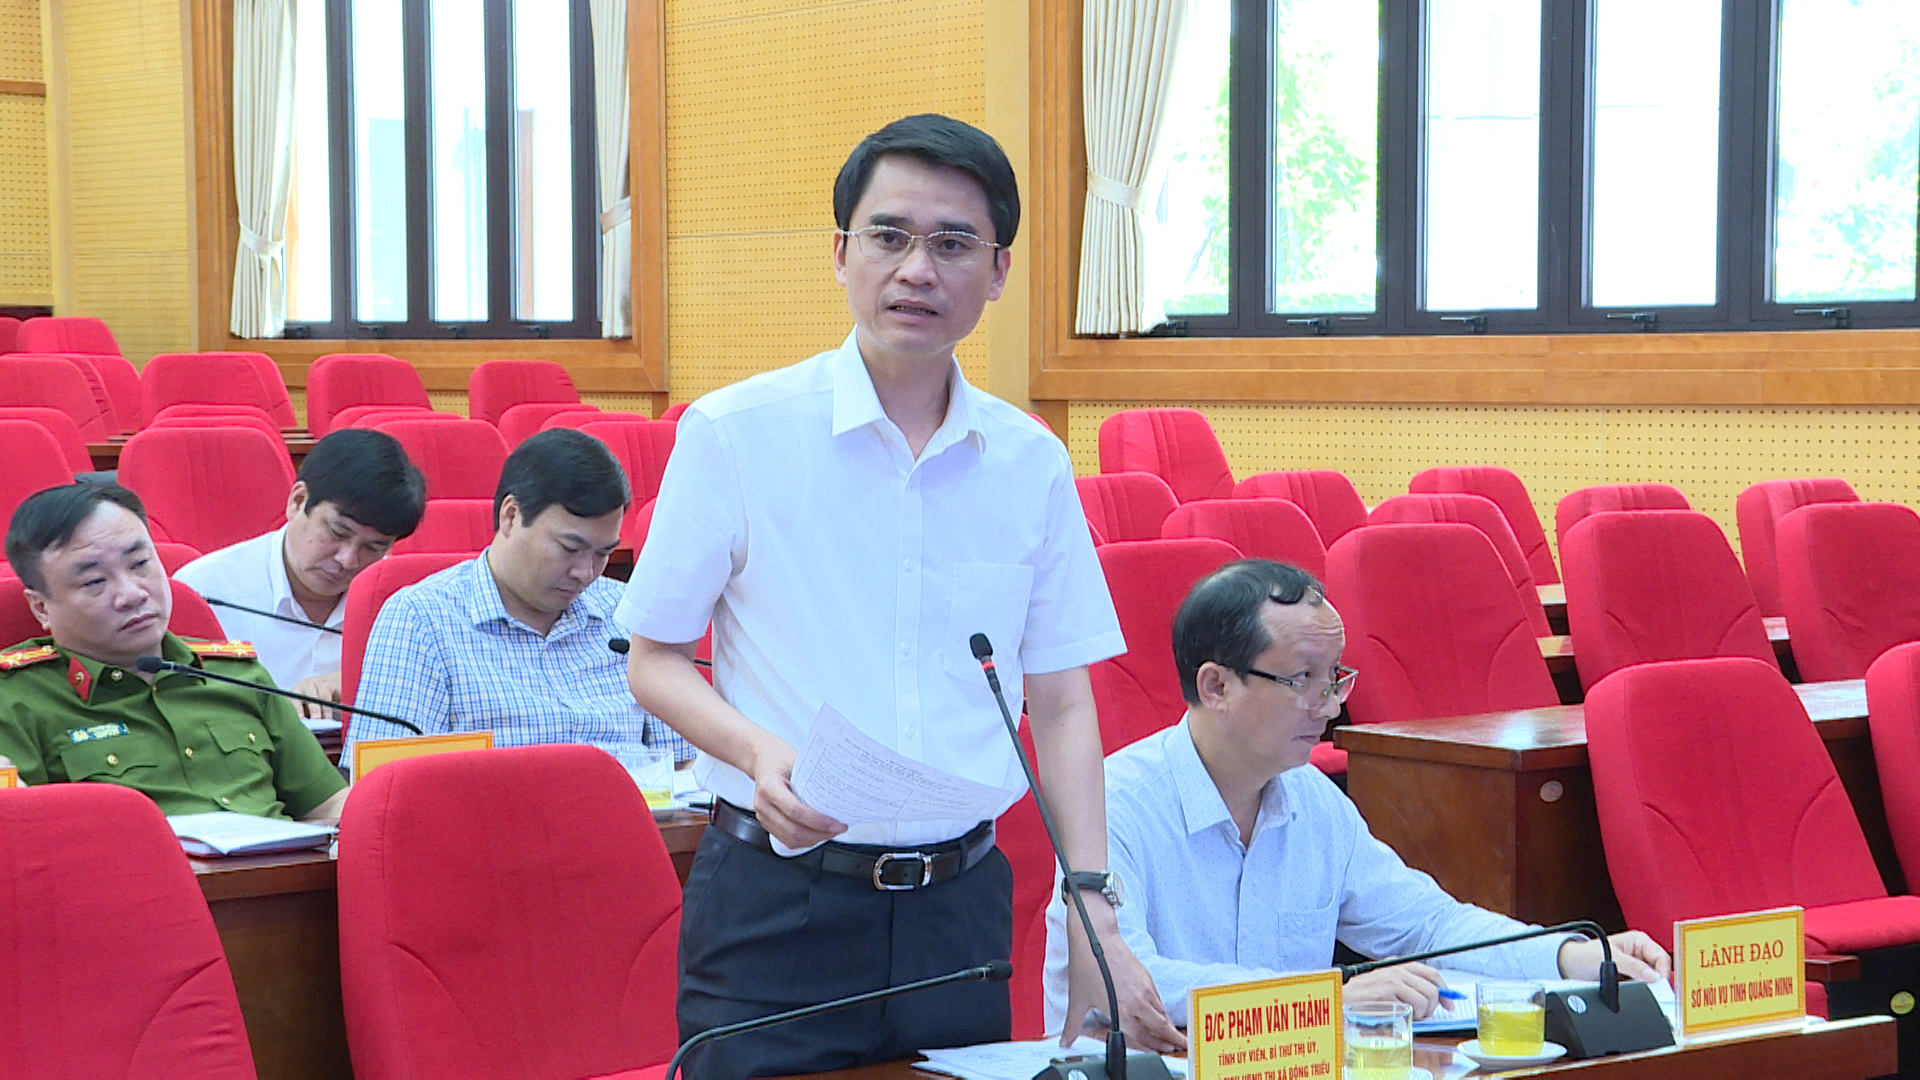 Đồng chí Phạm Văn Thành, Bí thư Thị ủy, Chủ tịch UBND Thị xã Đông Triều tham gia ý kiến tại hội nghị